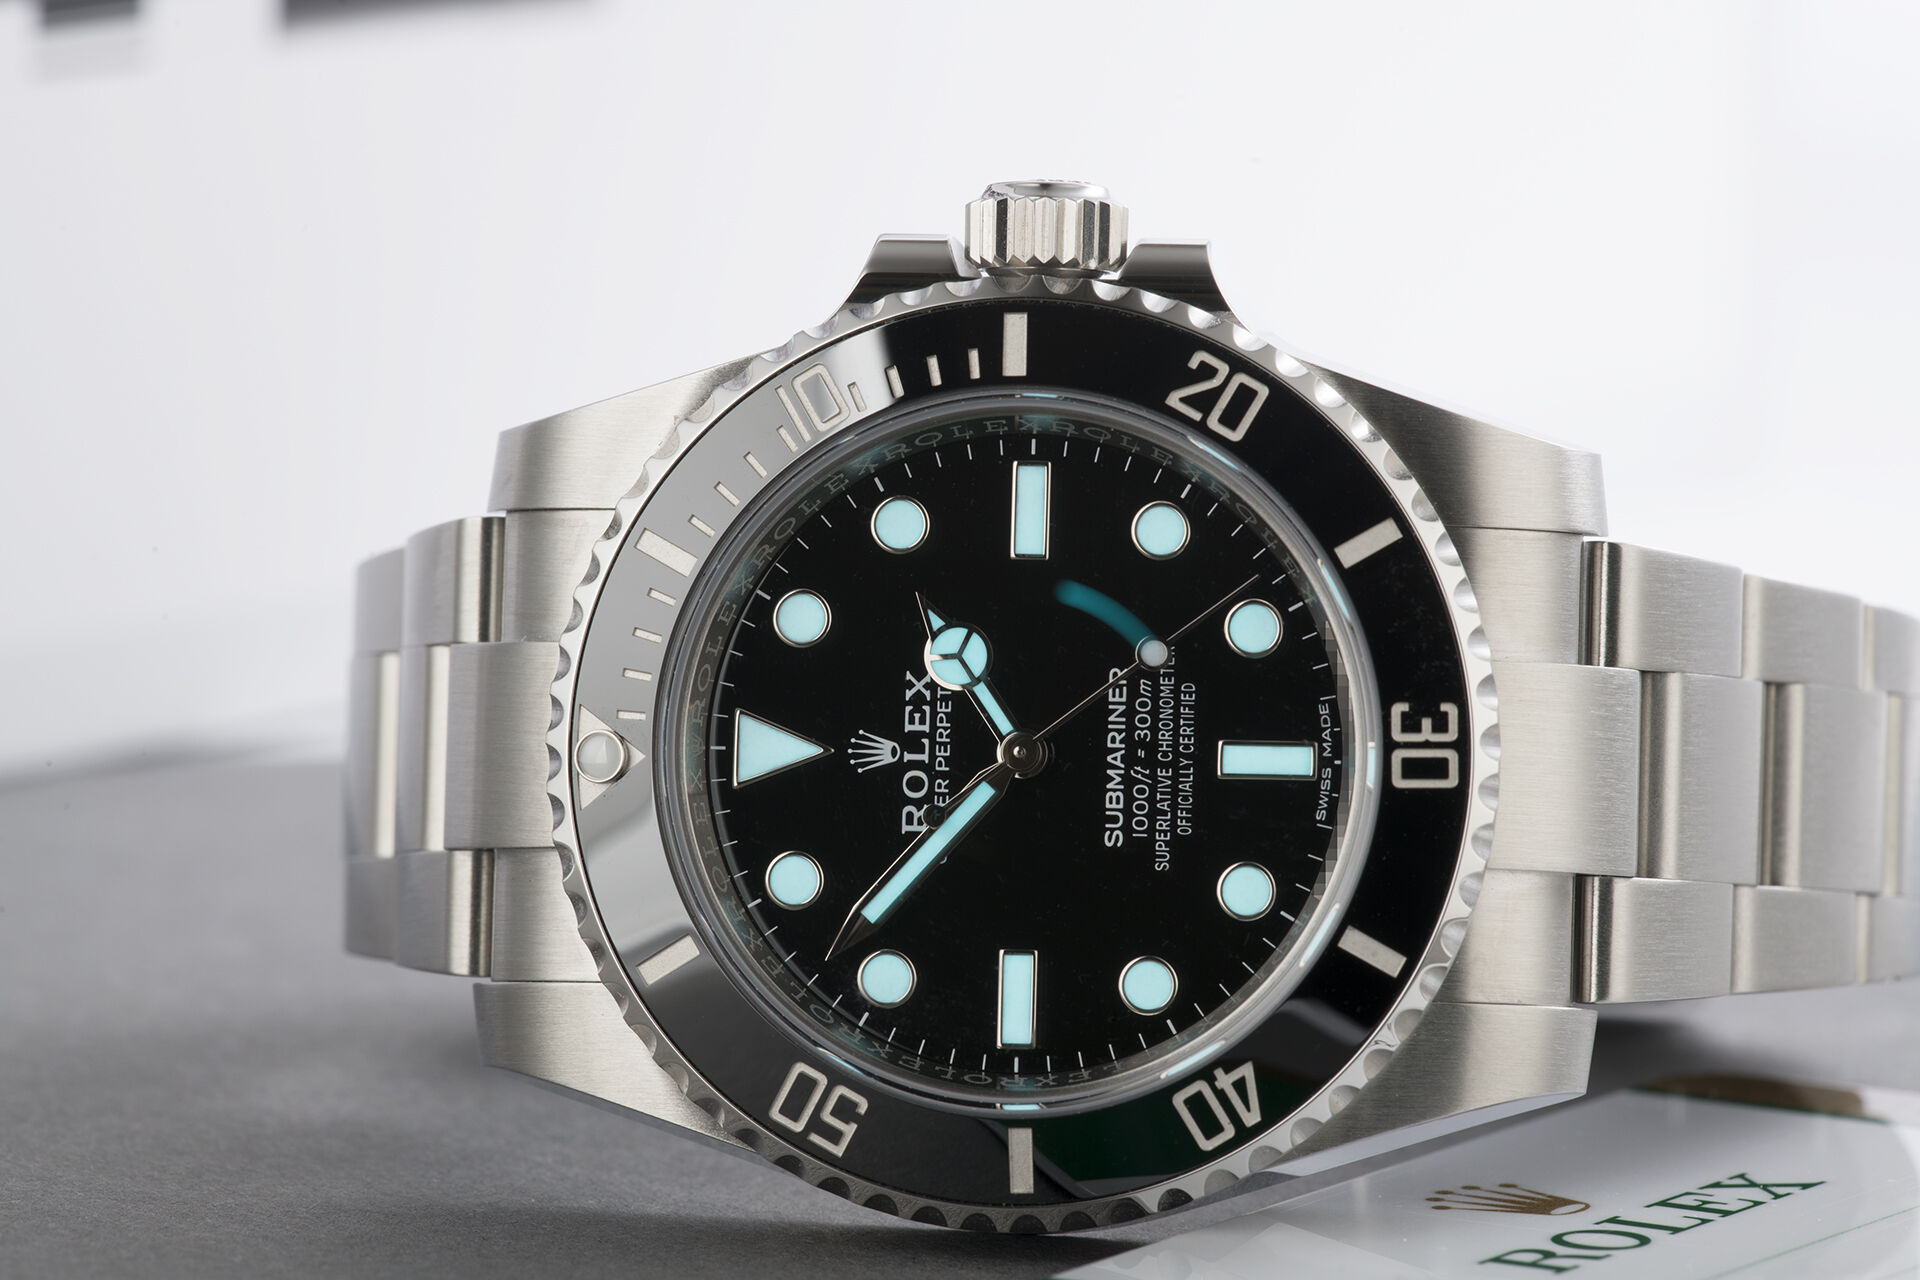 ref 114060 | 5 Year Rolex Warranty | Rolex Submariner 